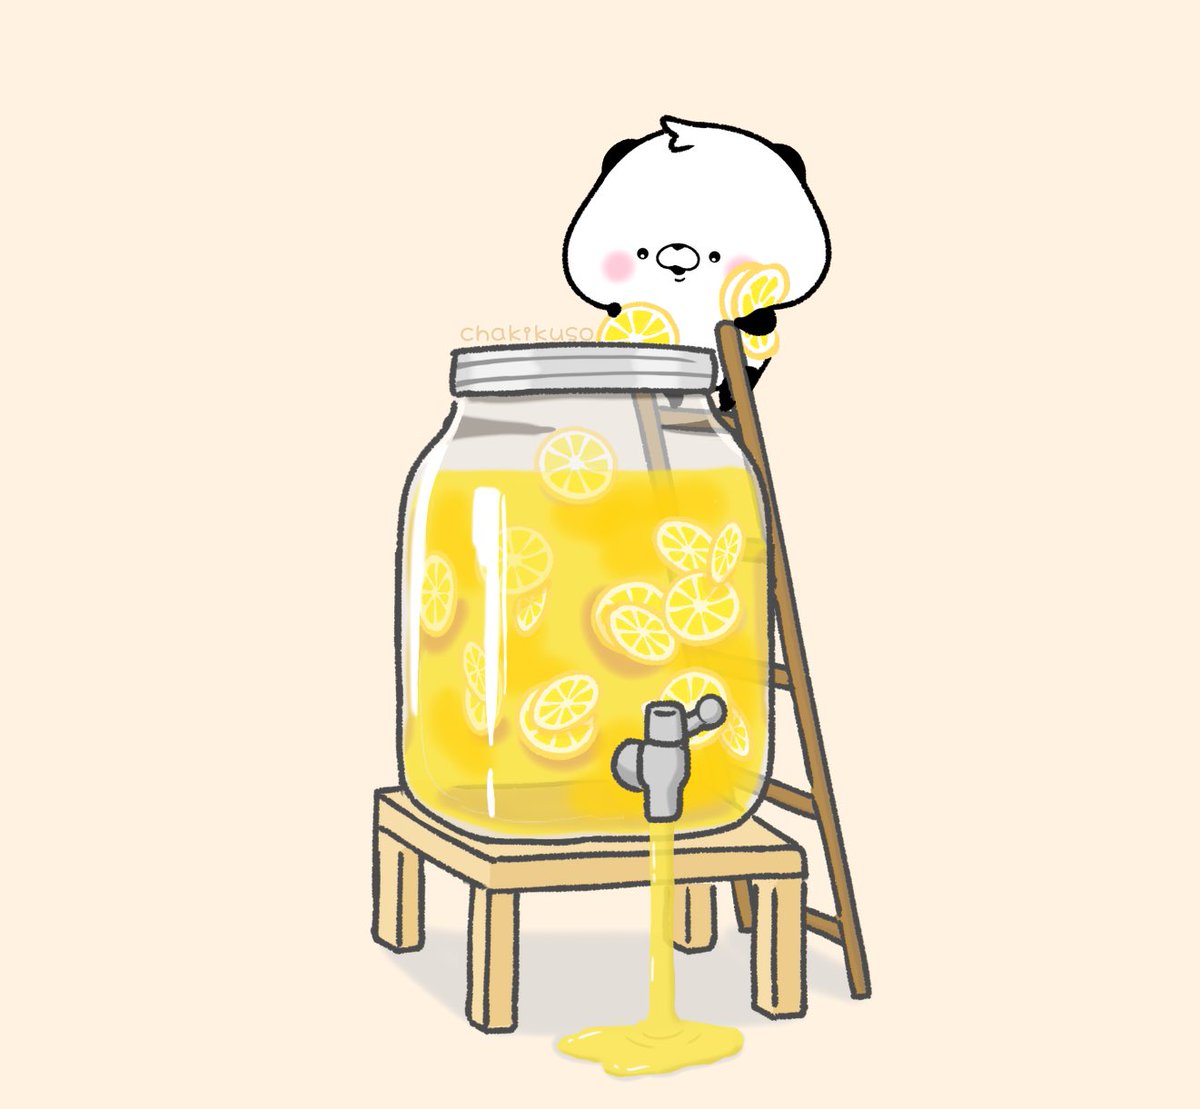 「レモネードを作るちぃパンちゃん#こころにパンダ #イラスト 」|chakikusoのイラスト